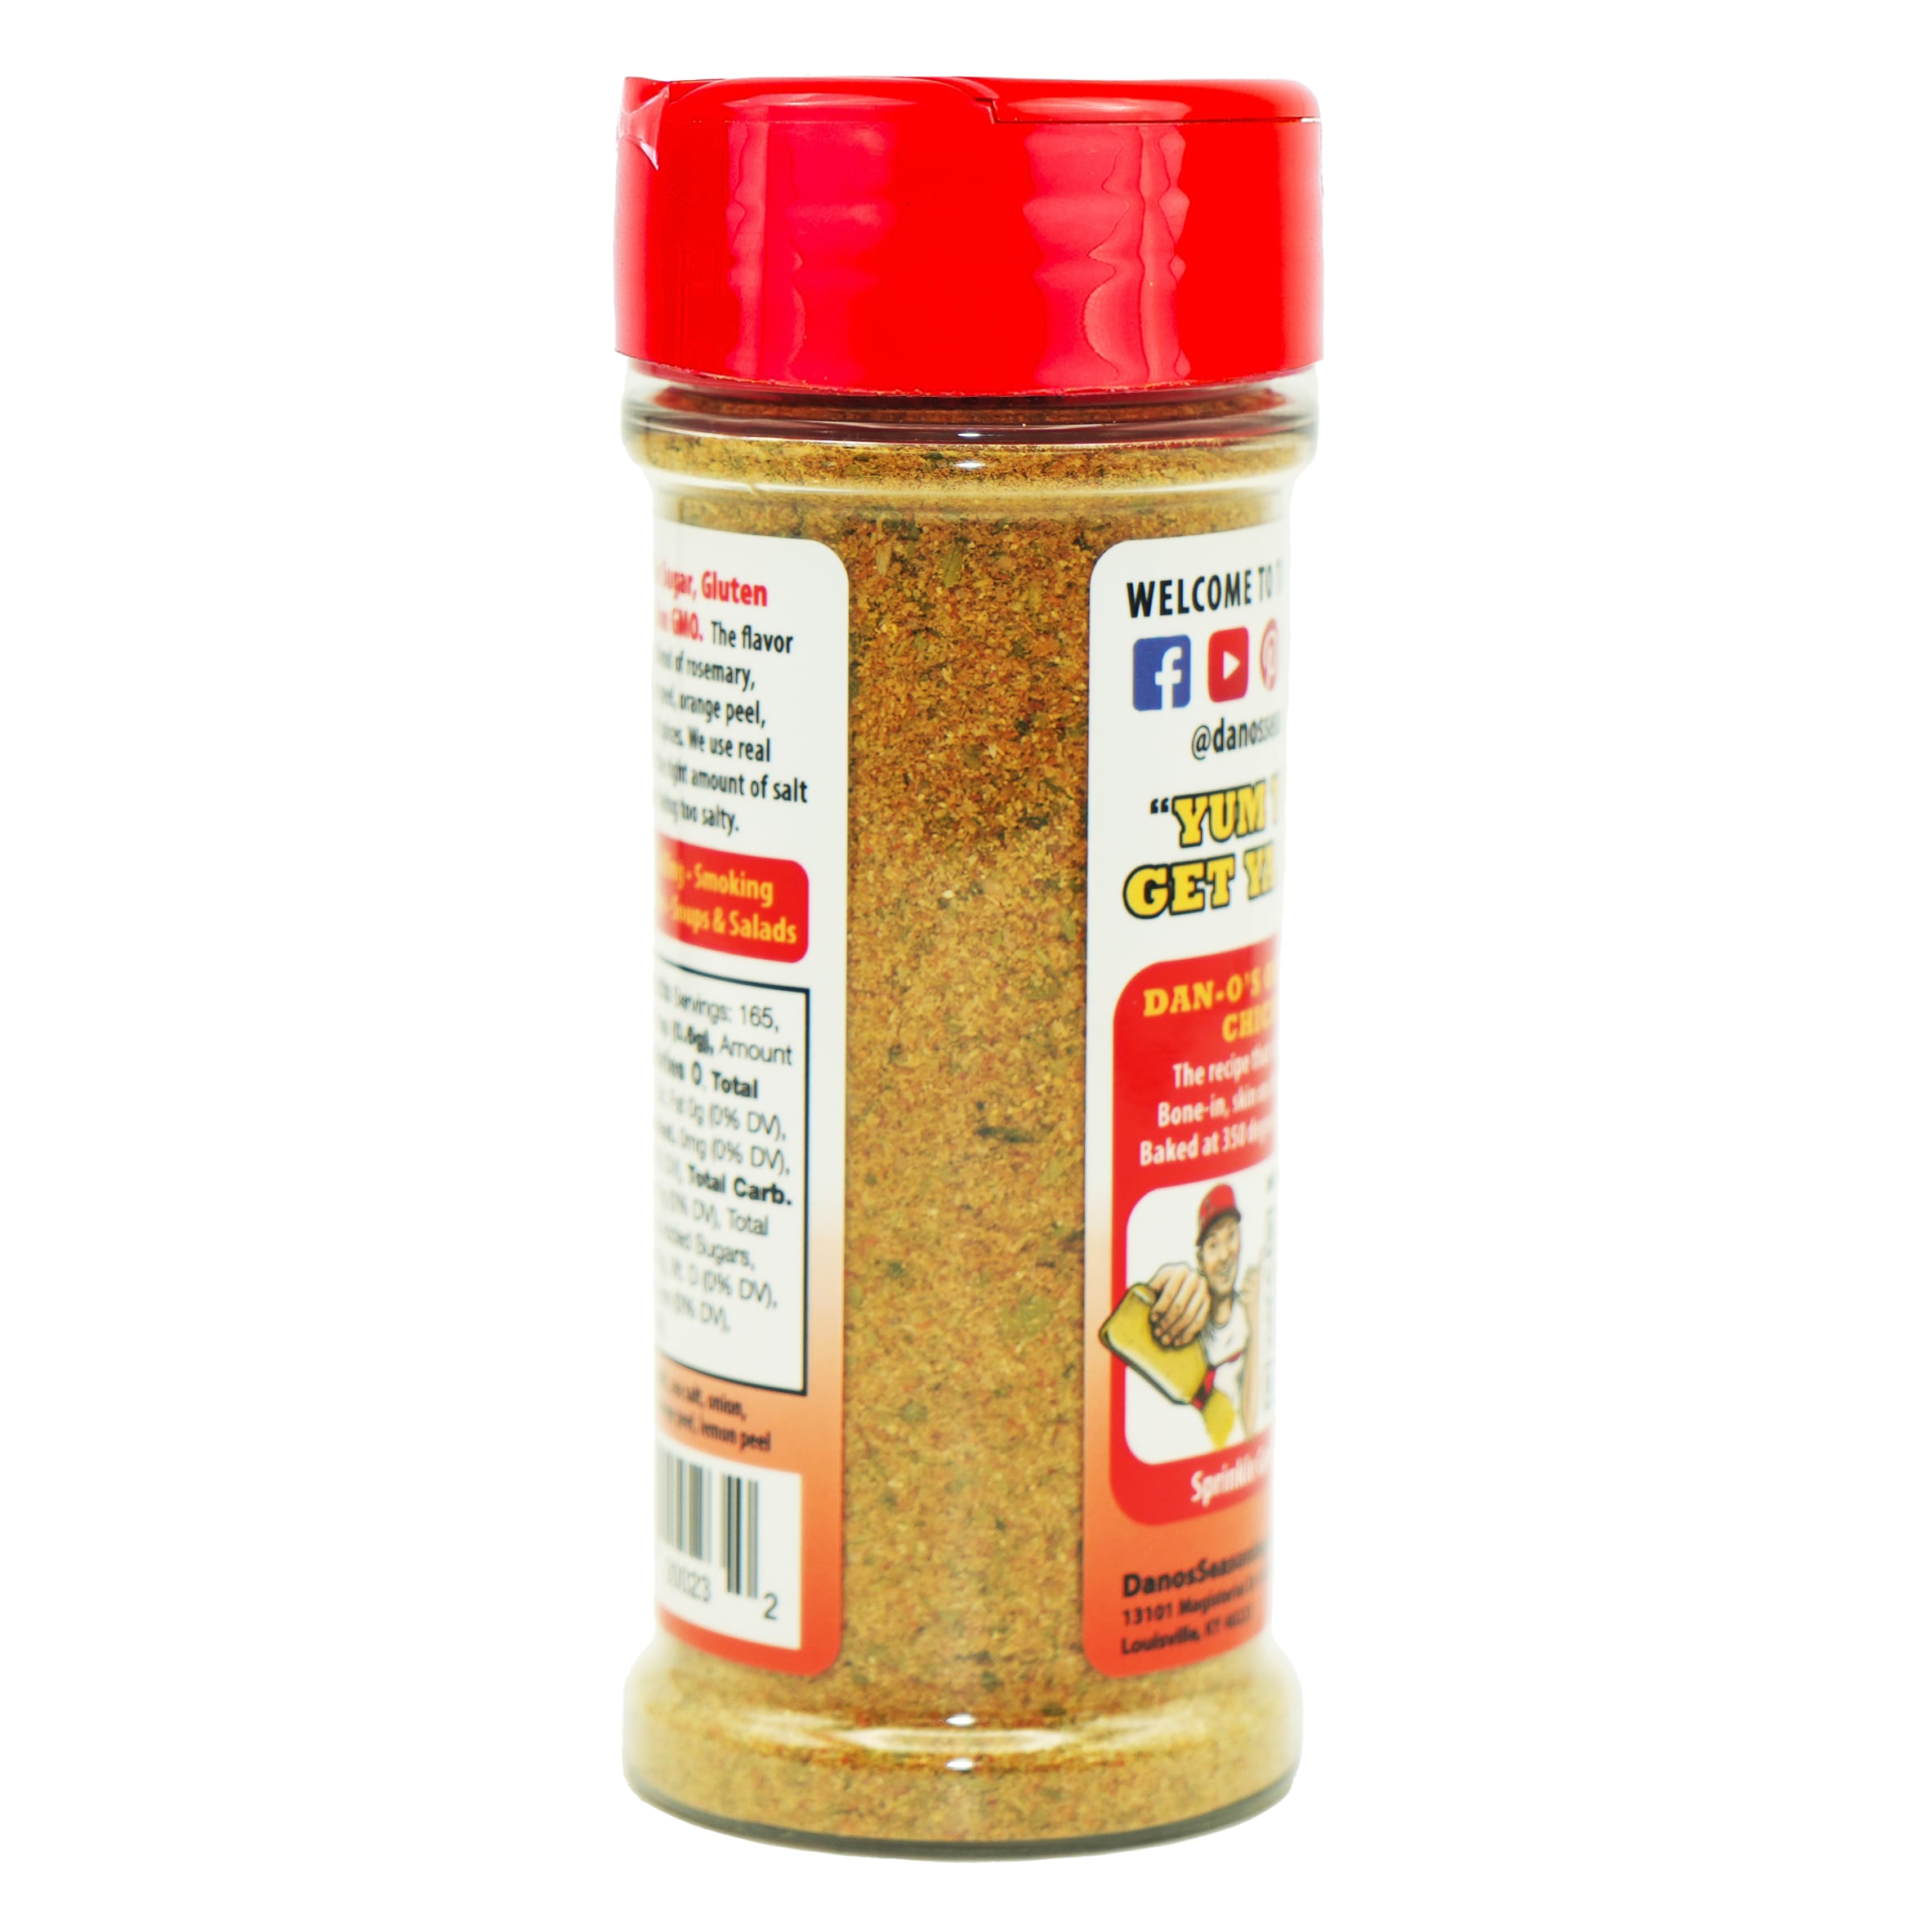 Dan-O's Original Spicy Seasoning - 3.5 Oz